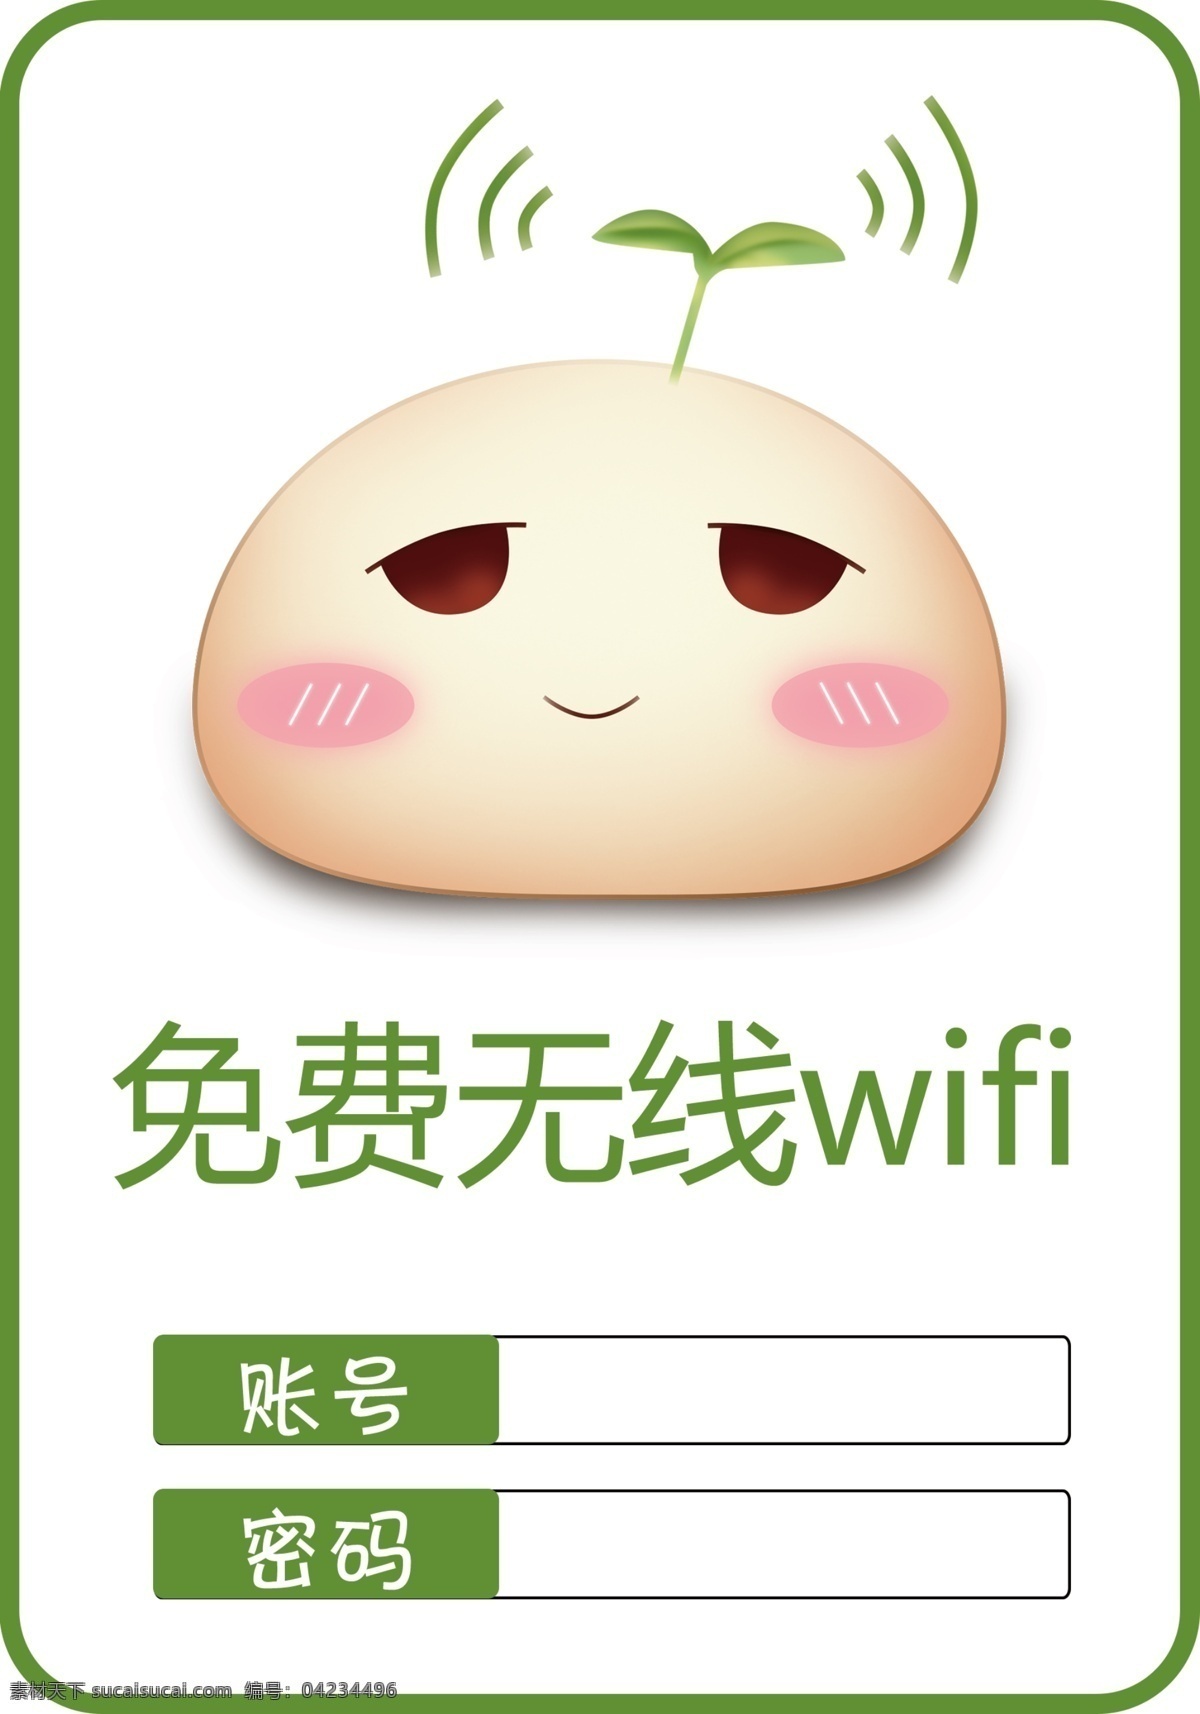 免费wifi 无线wifi wifi wifi图标 免费 无线 标志图标 公共标识标志